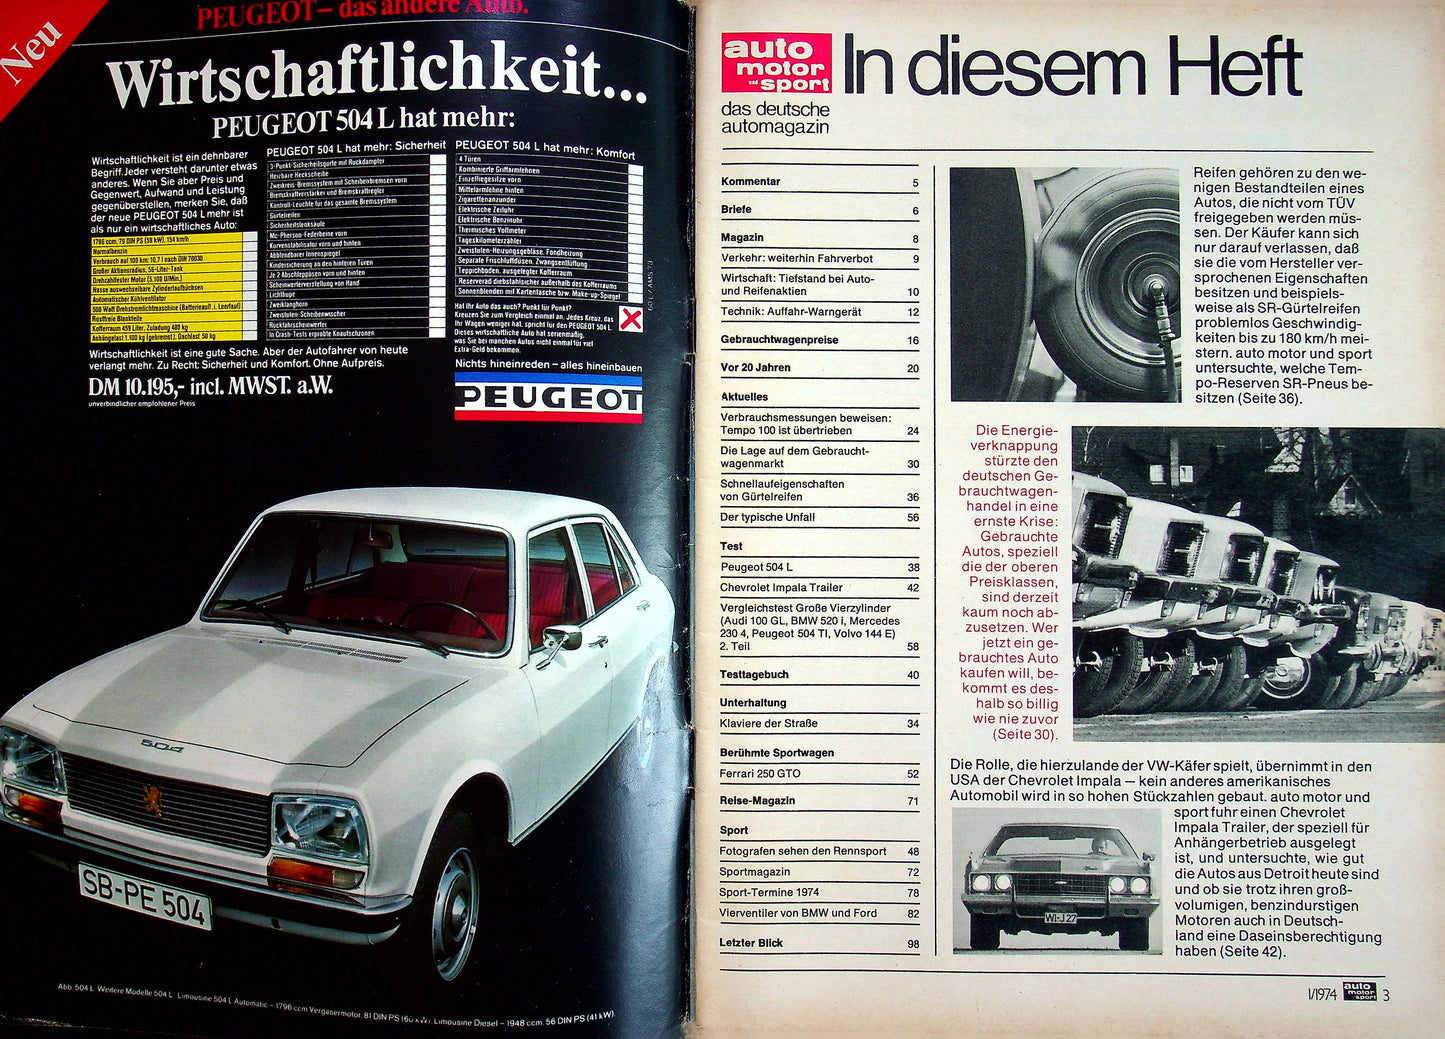 Auto Motor und Sport 01/1974